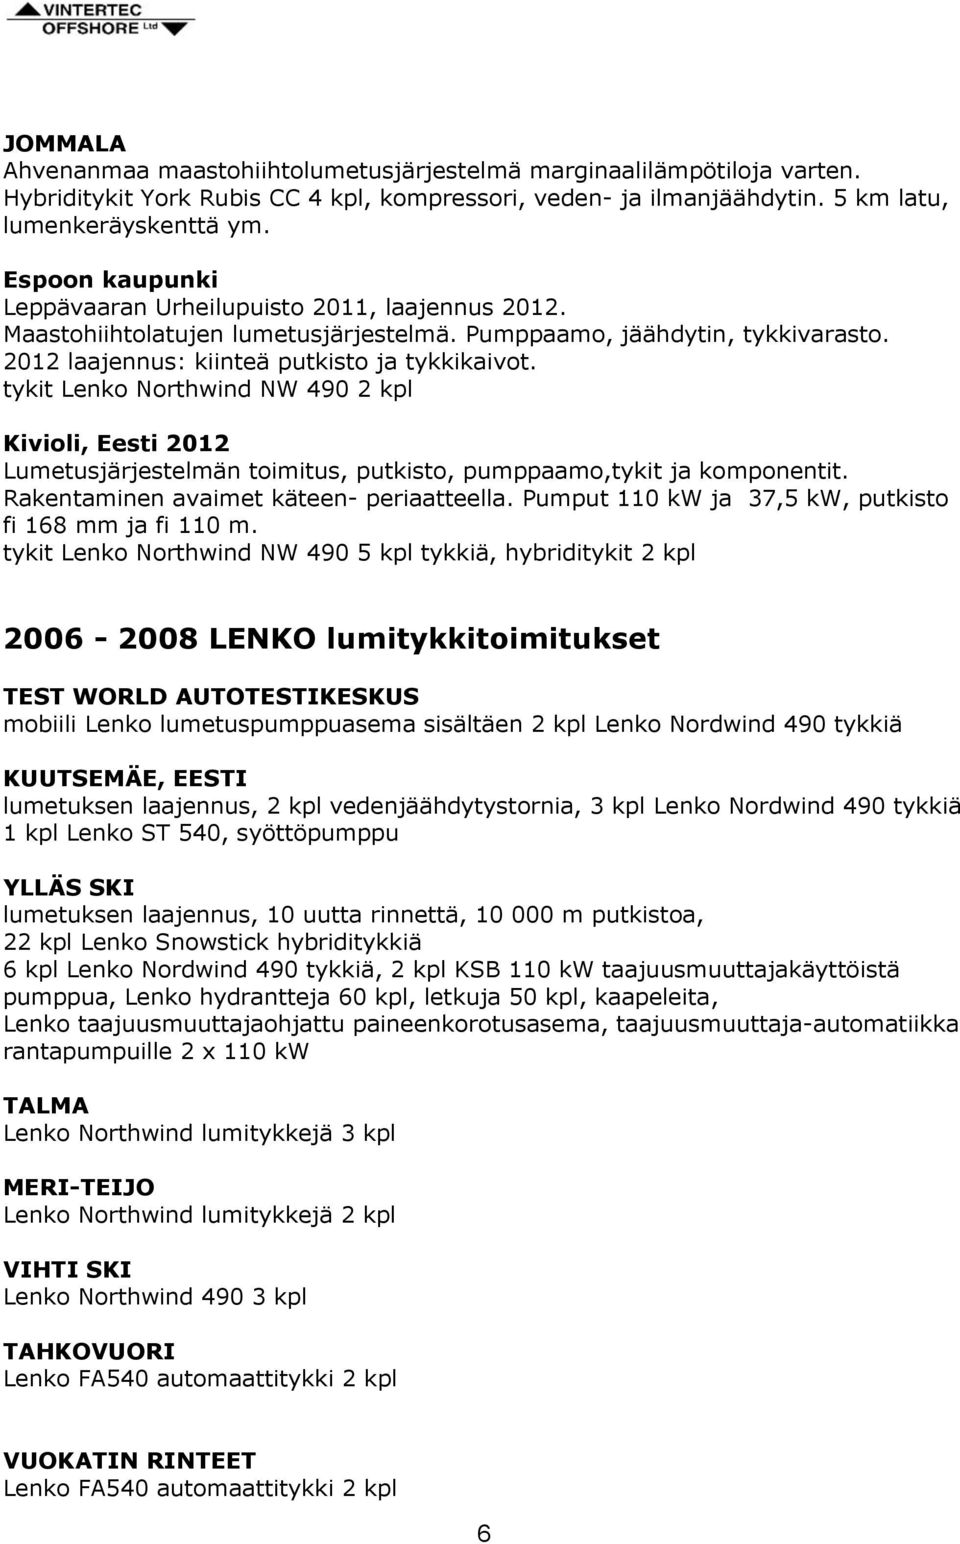 tykit Lenko Northwind NW 490 2 kpl Kivioli, Eesti 2012 Lumetusjärjestelmän toimitus, putkisto, pumppaamo,tykit ja komponentit. Rakentaminen avaimet käteen- periaatteella.